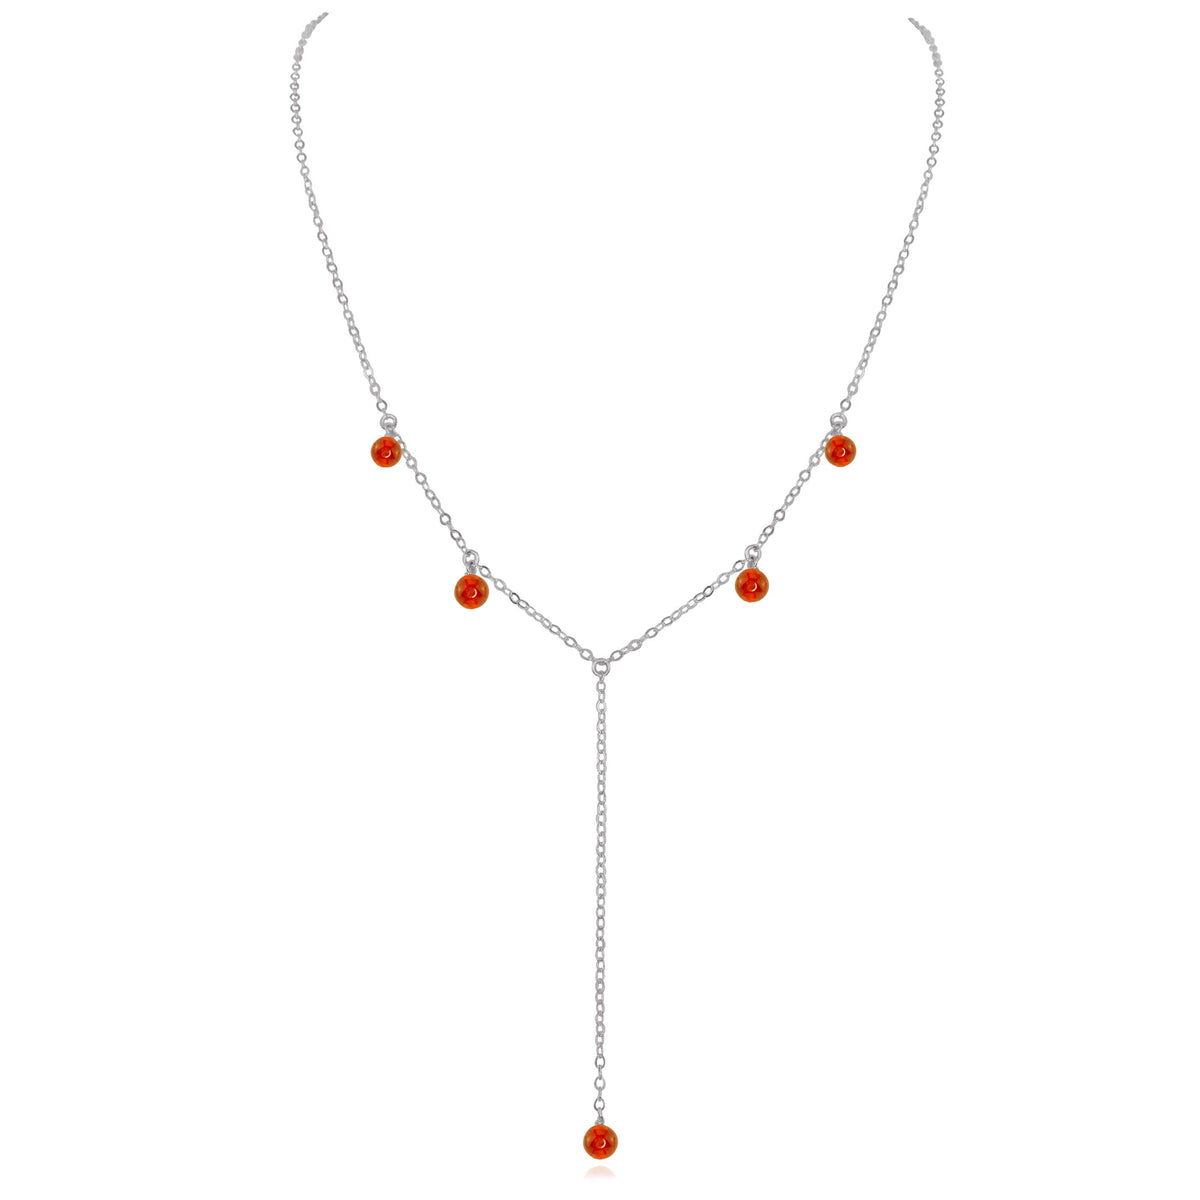 Boho Y Necklace - Carnelian - Stainless Steel - Luna Tide Handmade Jewellery